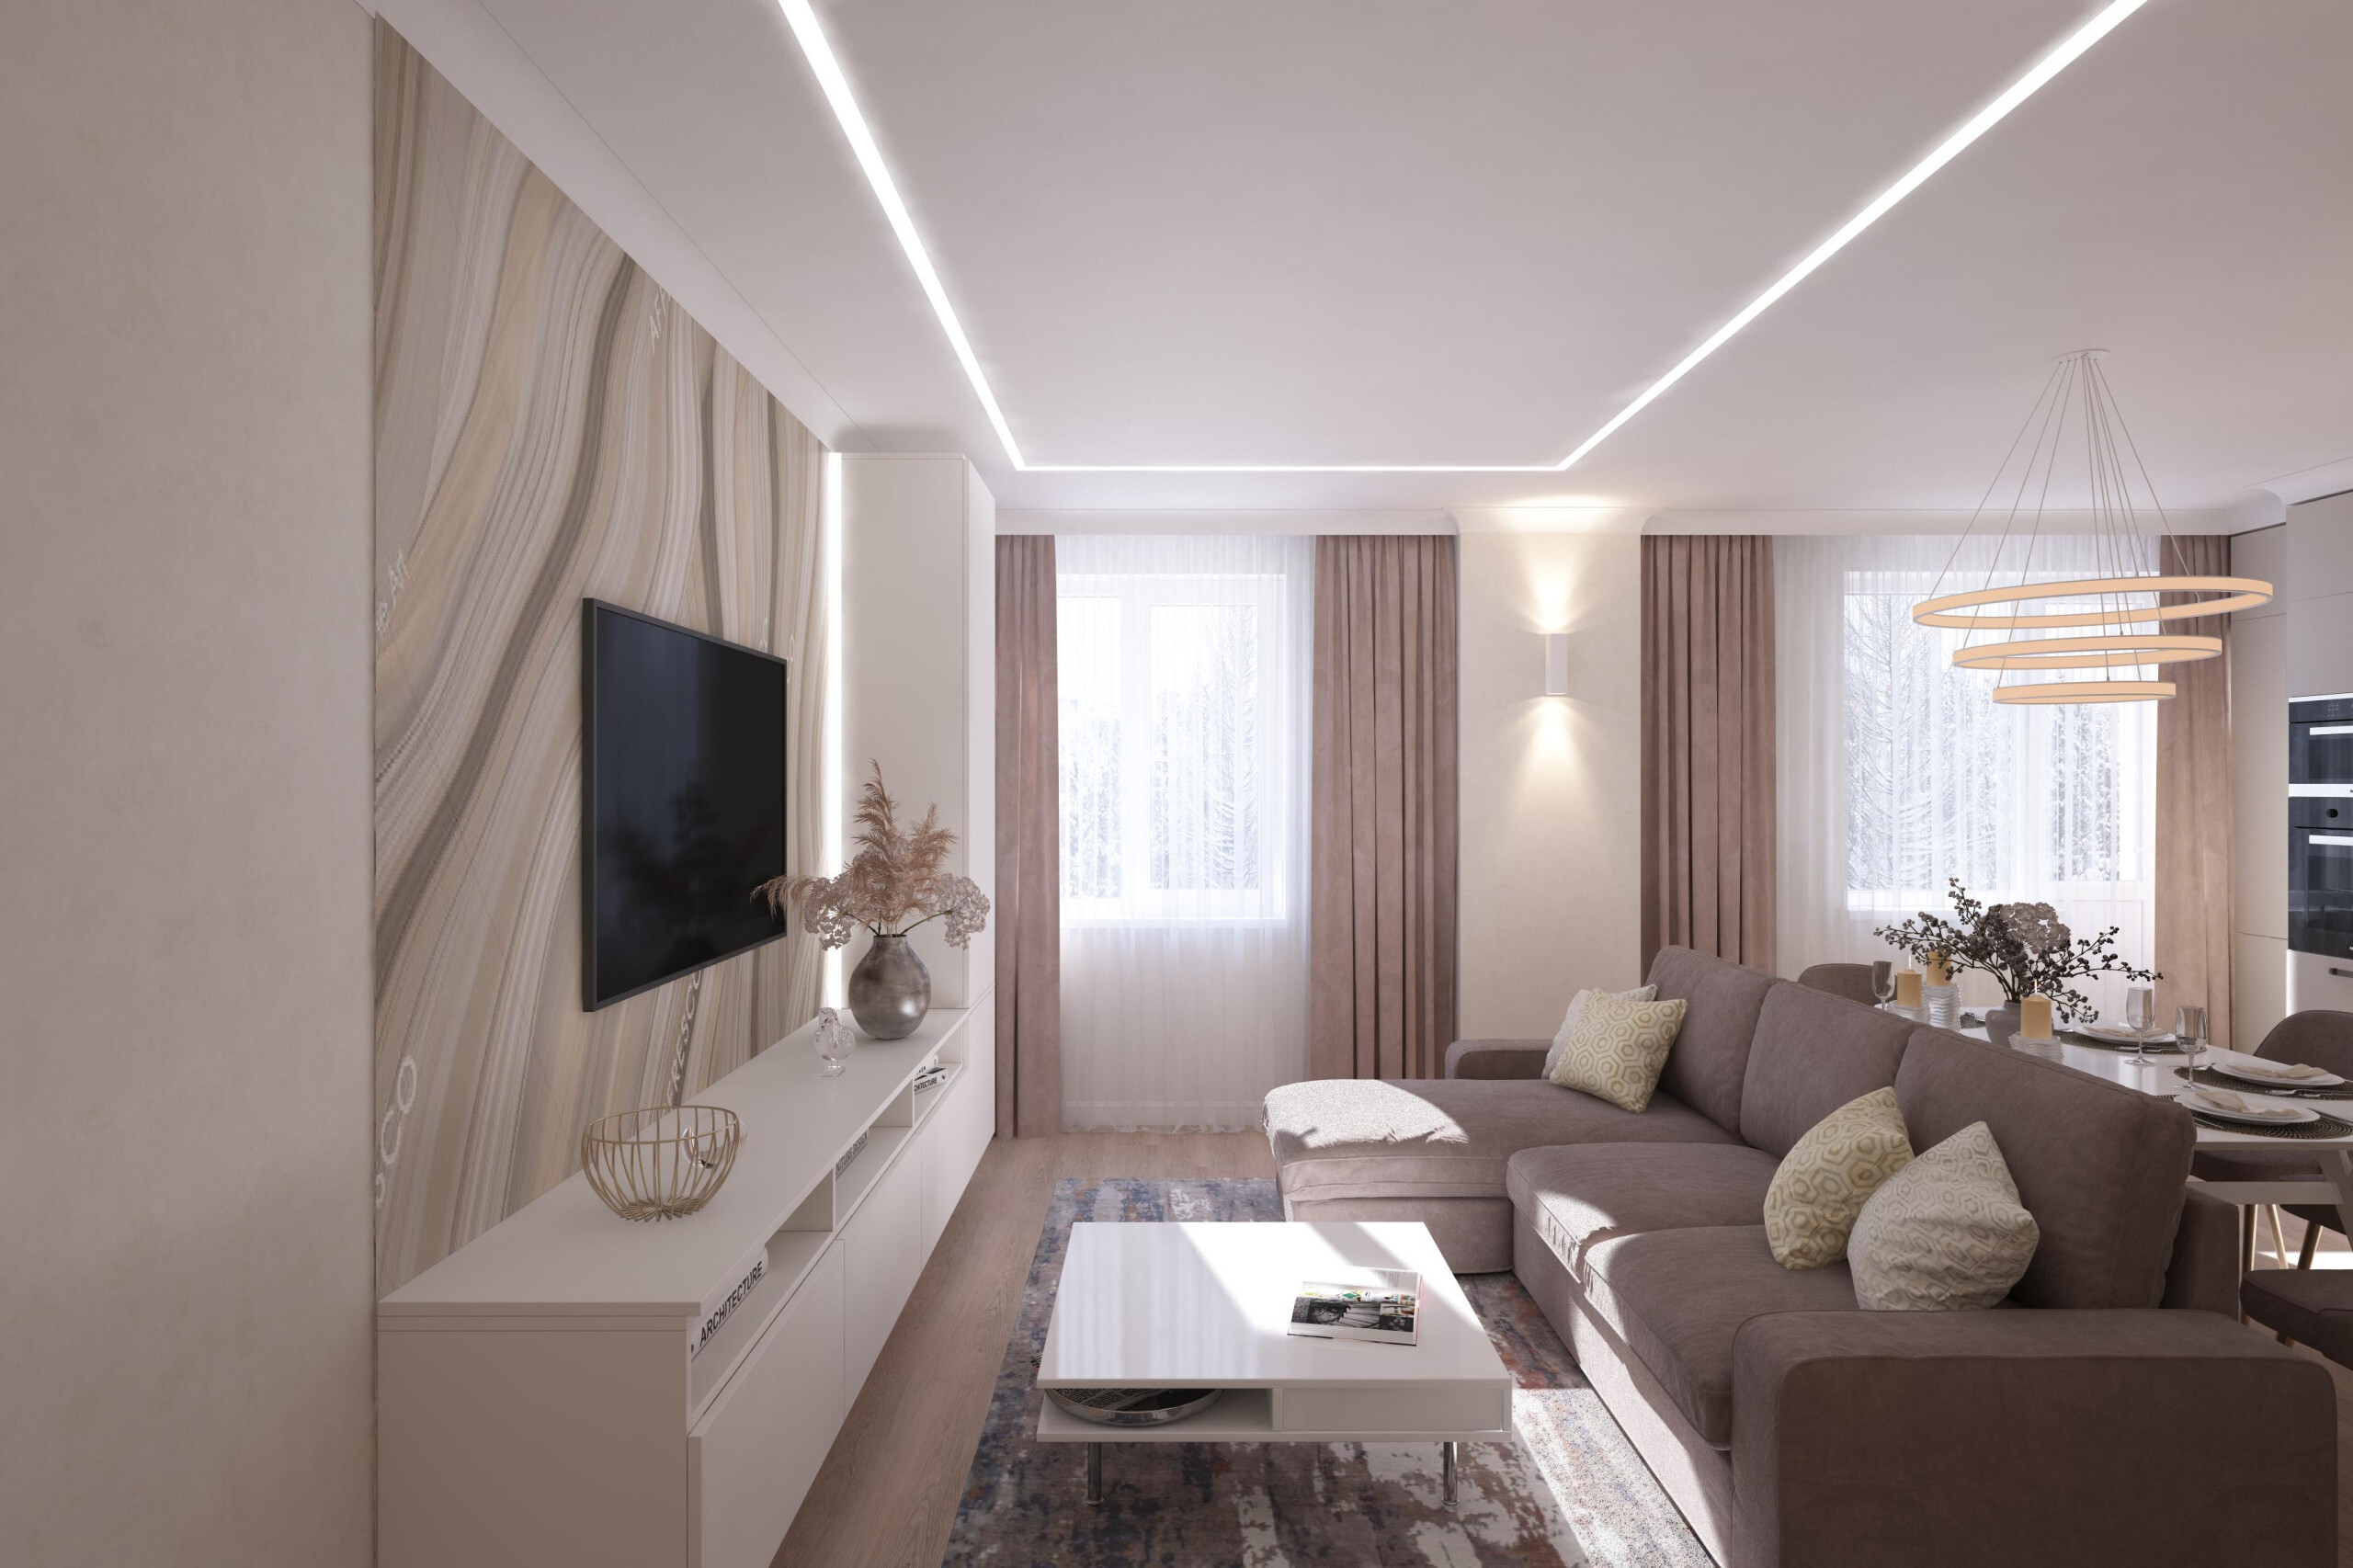 Интерьер гостиной с нишей с подсветкой, световыми линиями, рейками с подсветкой, подсветкой настенной, подсветкой светодиодной и с подсветкой в современном стиле